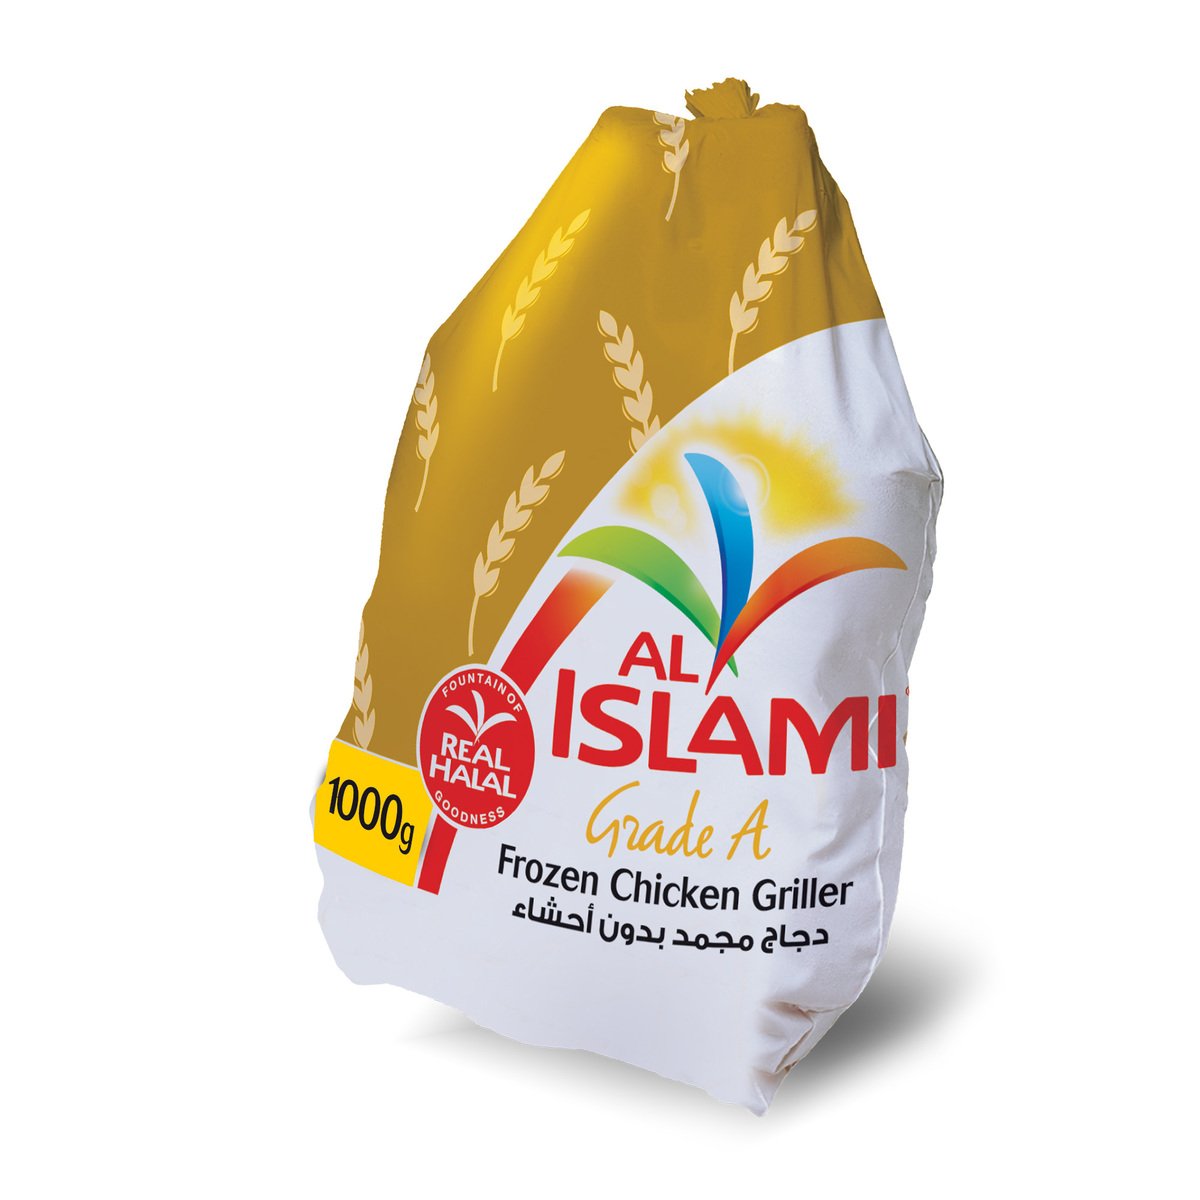 Al Islami Frozen Chicken Griller 1 kg